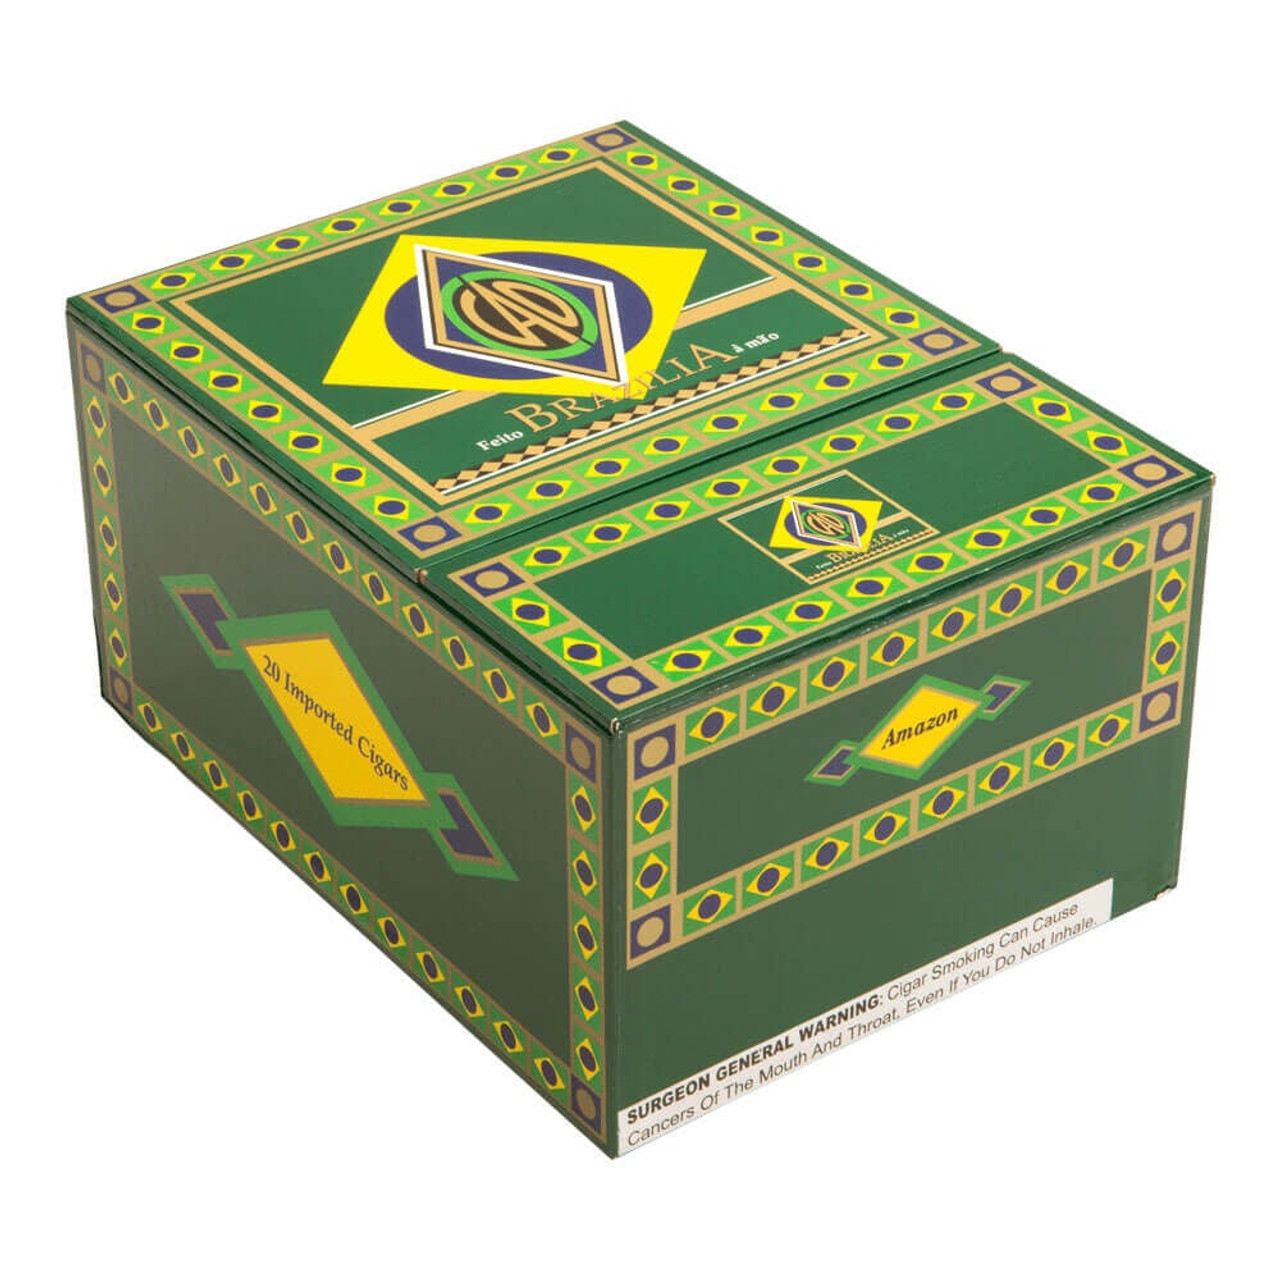 CAO Brazilia Amazon Cigars - 6 x 60 (Box of 20) *Box